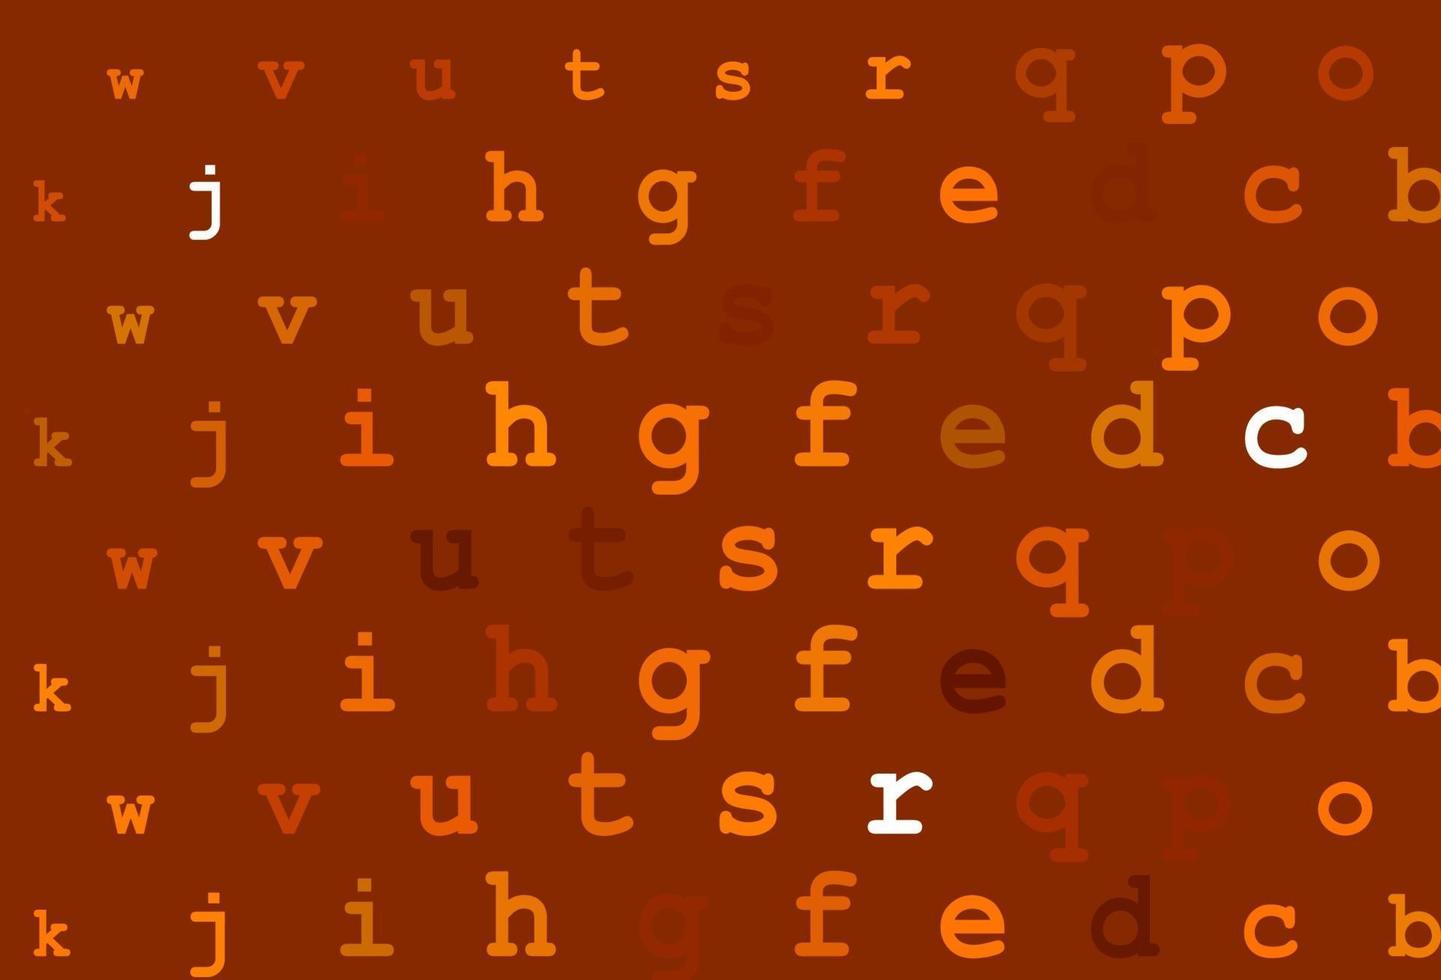 hellgelber, orangefarbener Vektorhintergrund mit Zeichen des Alphabets. vektor